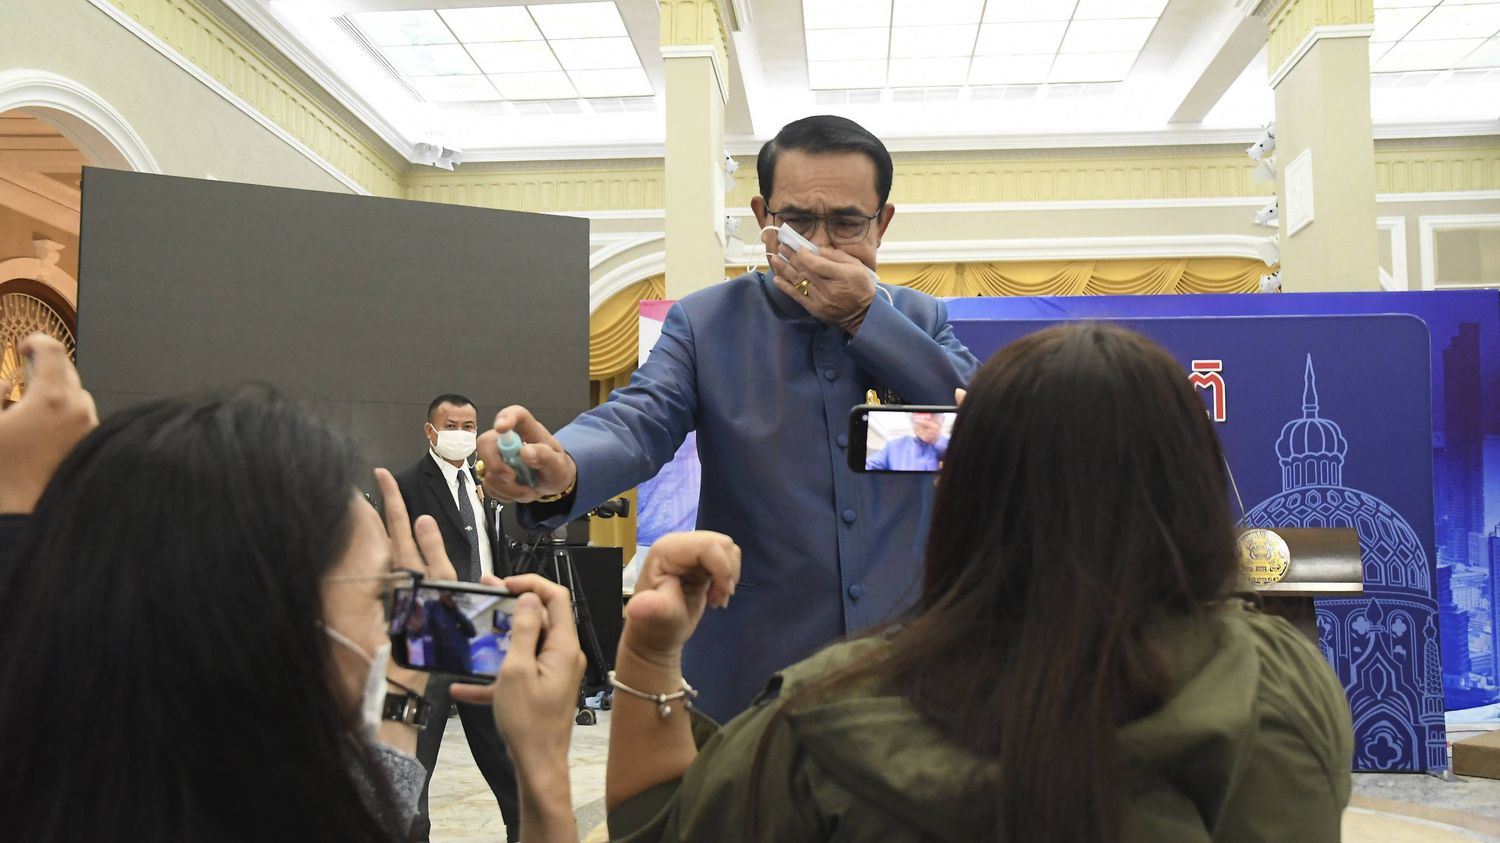 VIDEO. Thaïlande : agacé, le Premier ministre asperge des journalistes de spray hydroalcoolique